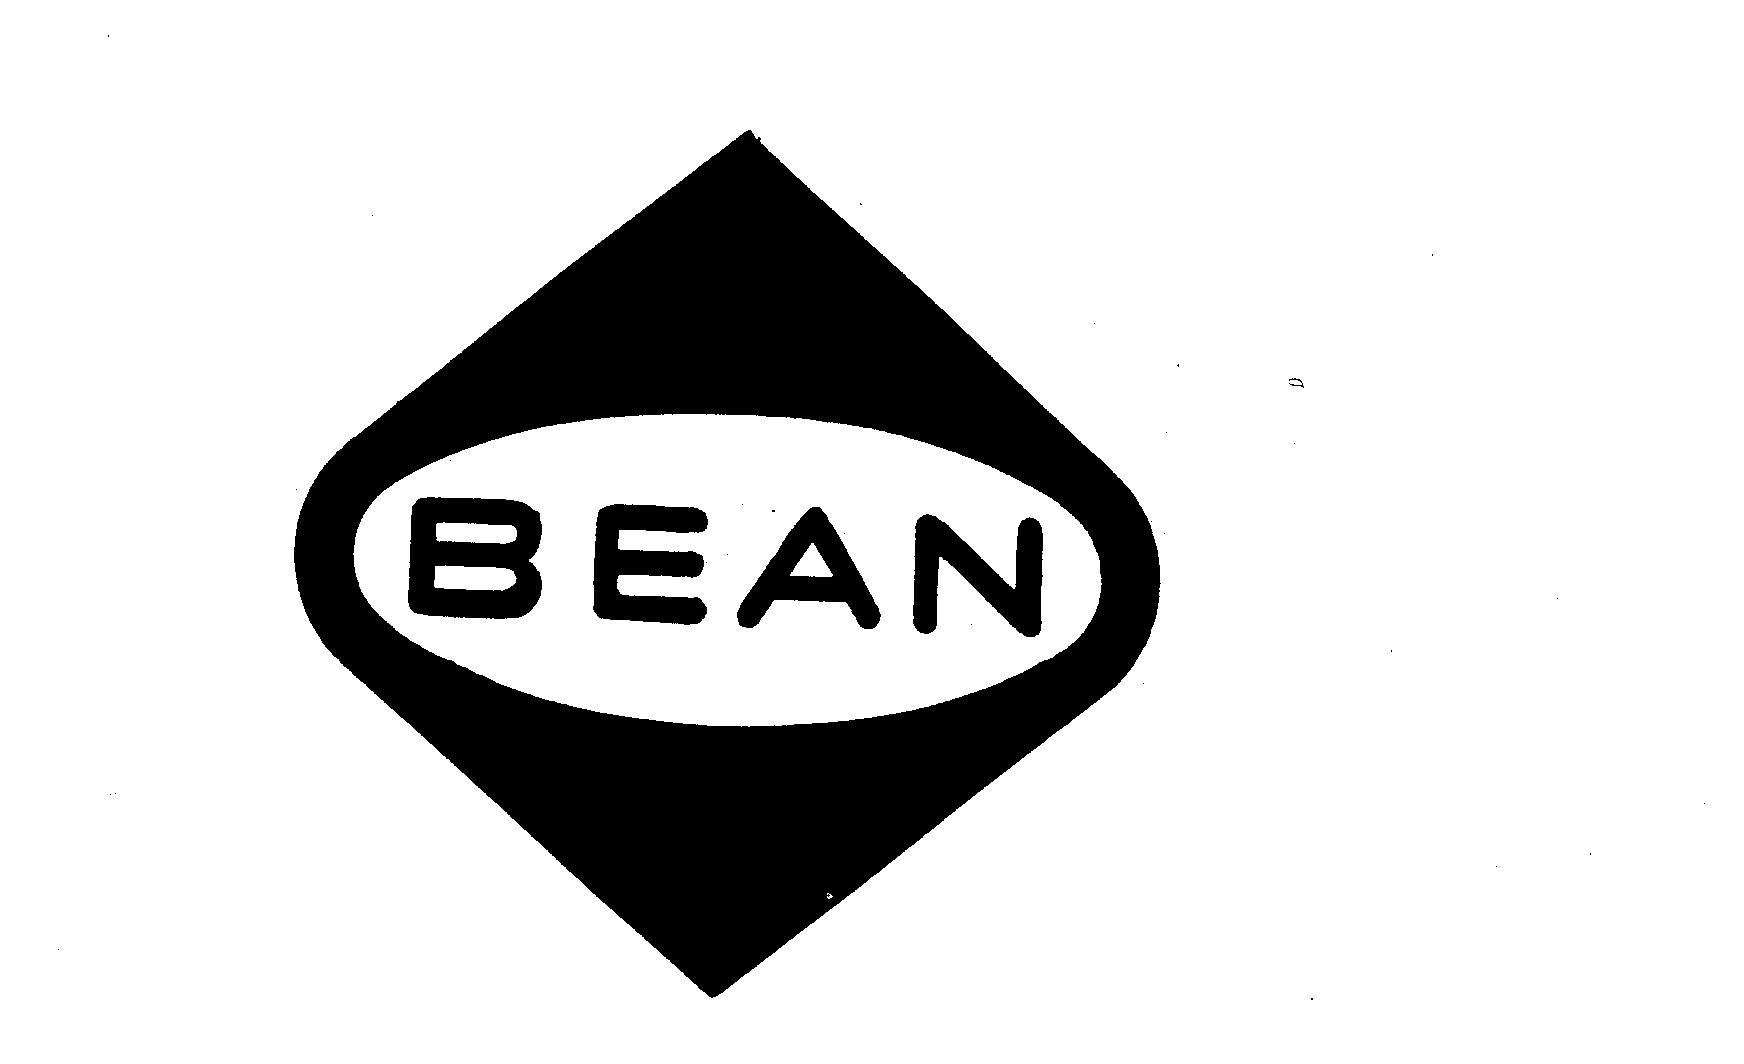 BEAN